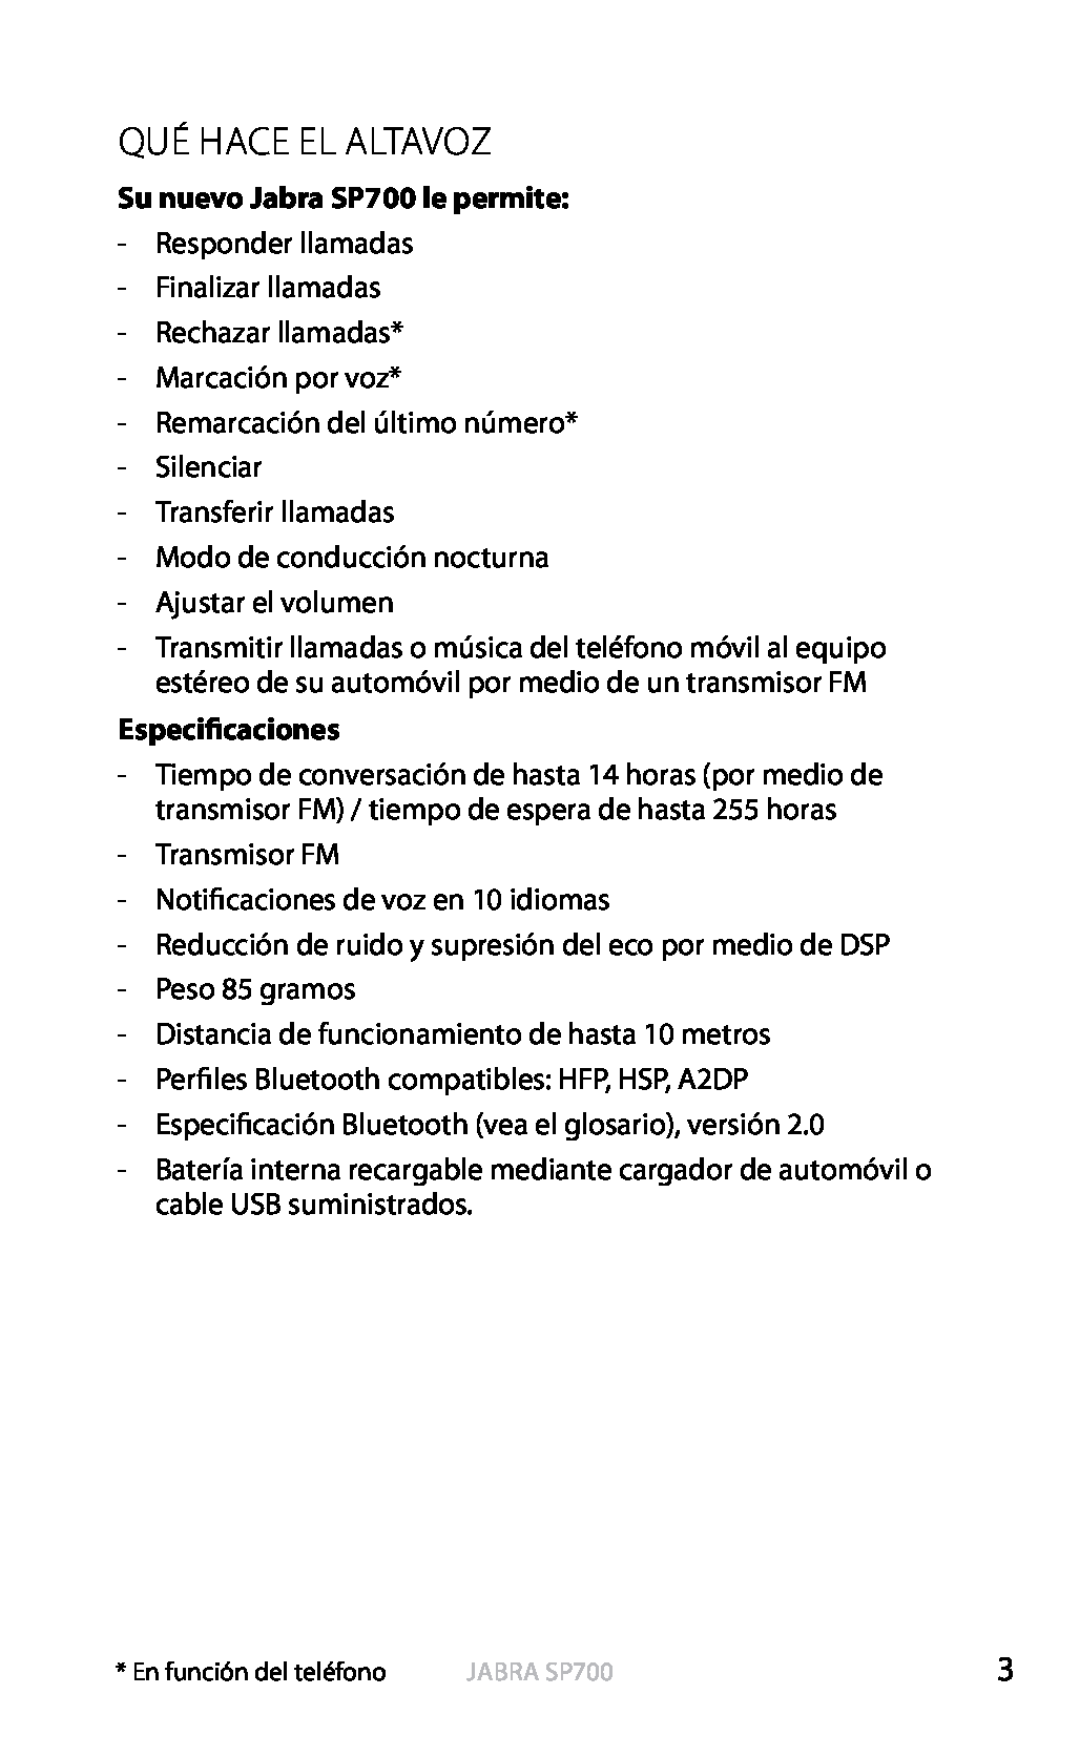 Jabra user manual Qué Hace El Altavoz, Su nuevo Jabra SP700 le permite, Especificaciones, Español 